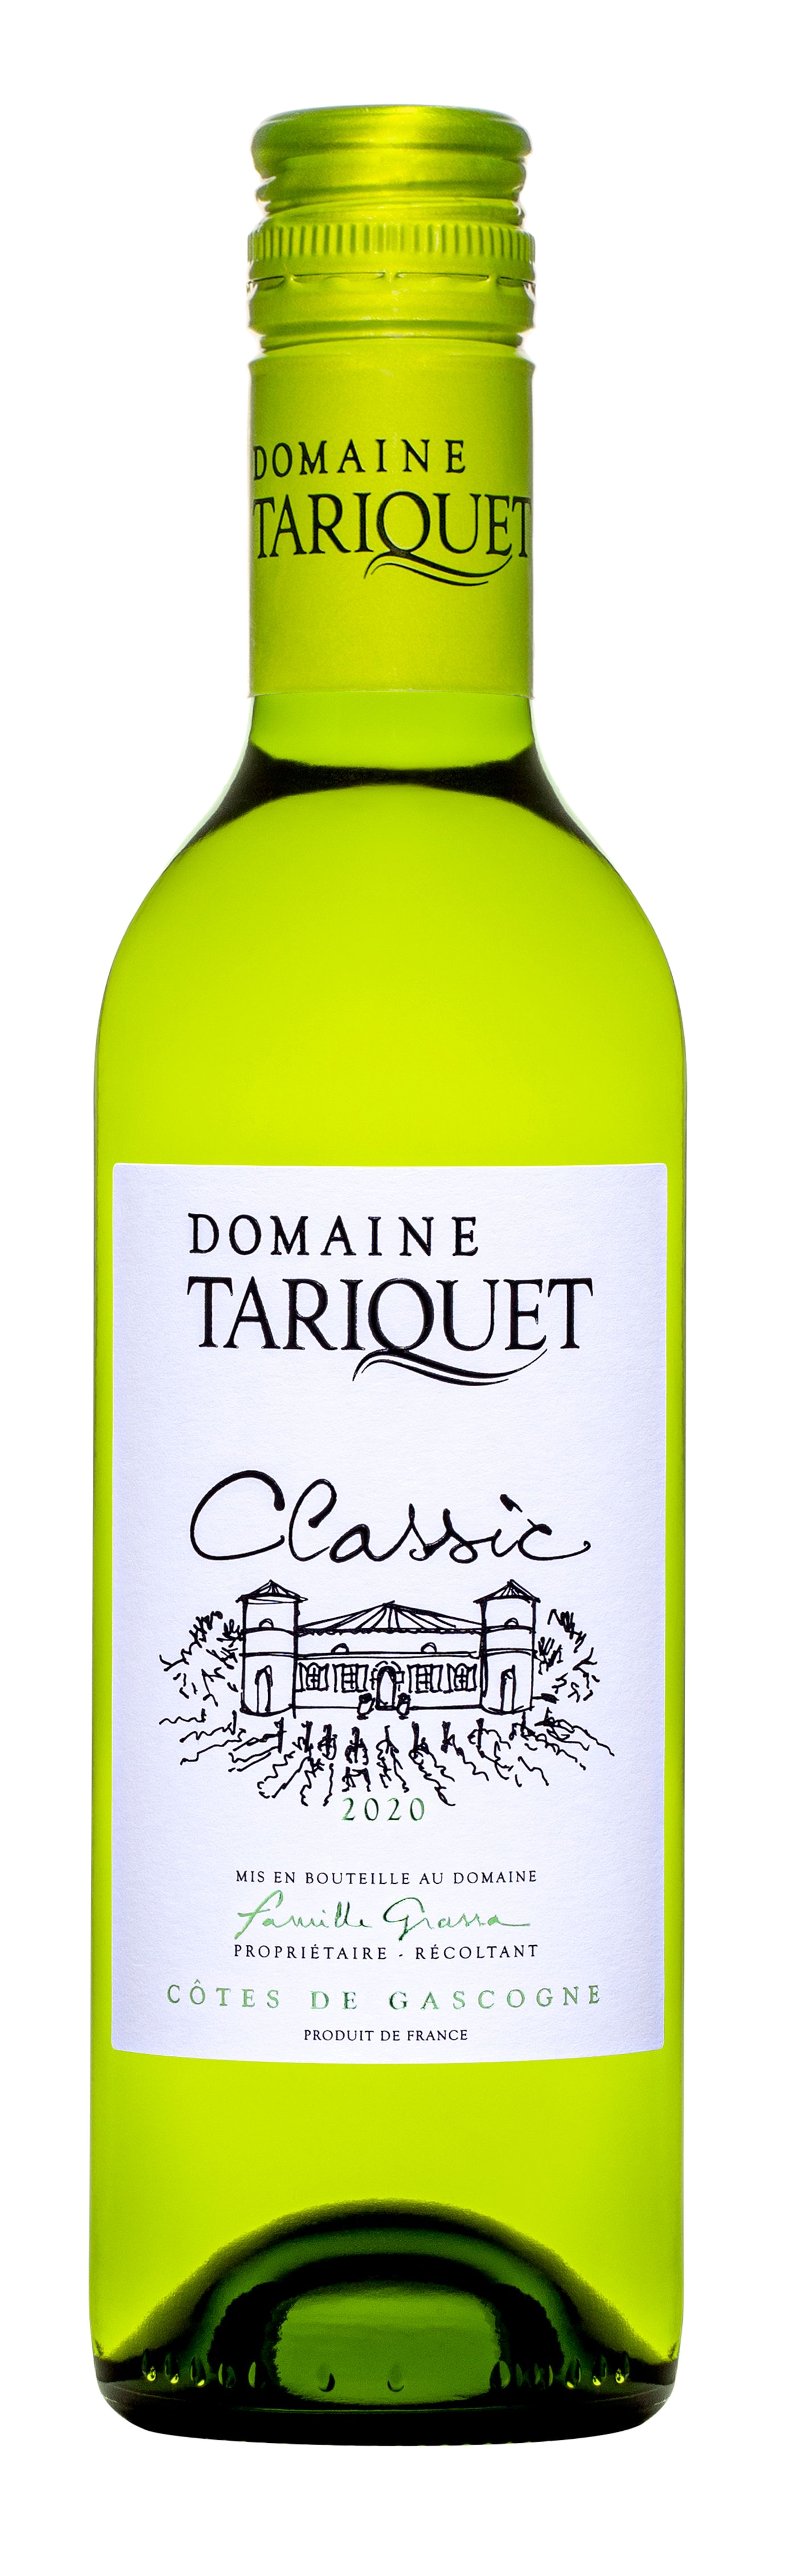 Domaine Tariquet Classic 0,375L